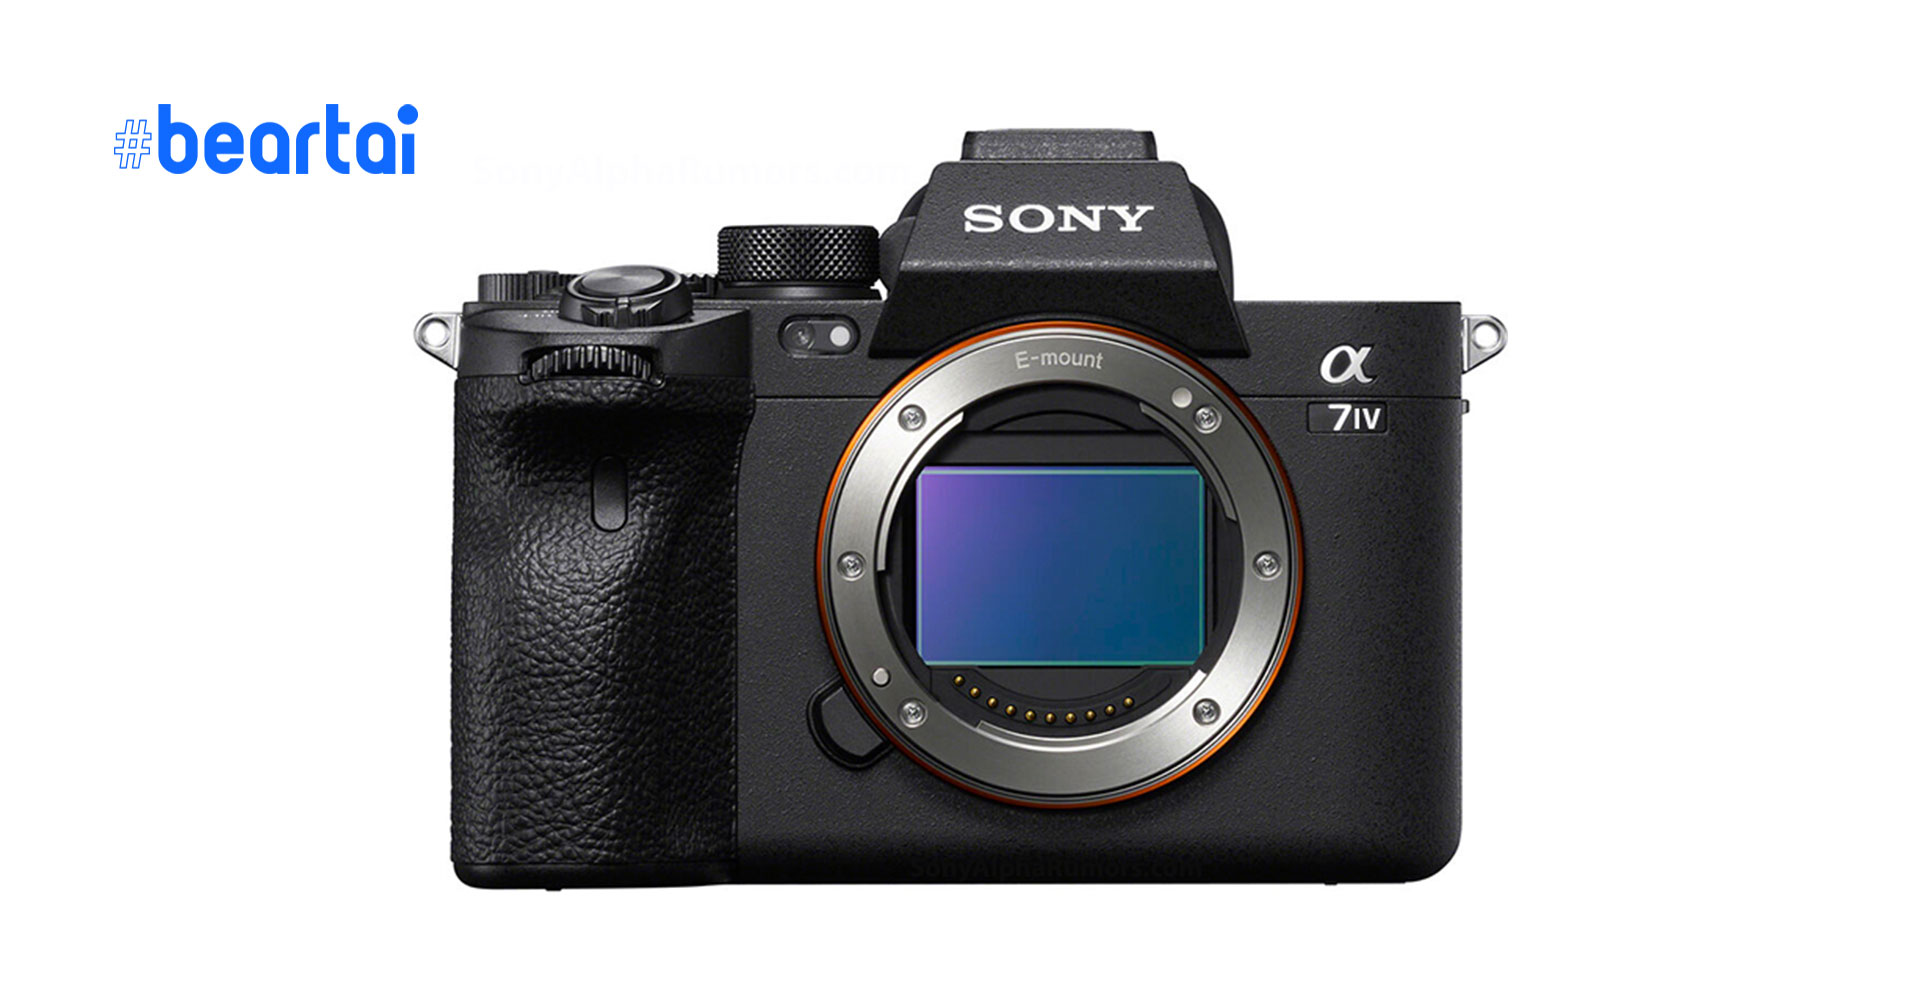 ลือ กล้อง Sony A7IV จะใช้เซนเซอร์รุ่นใหม่ที่มีละเอียดมากขึ้น วิดีโอ 4K 60p